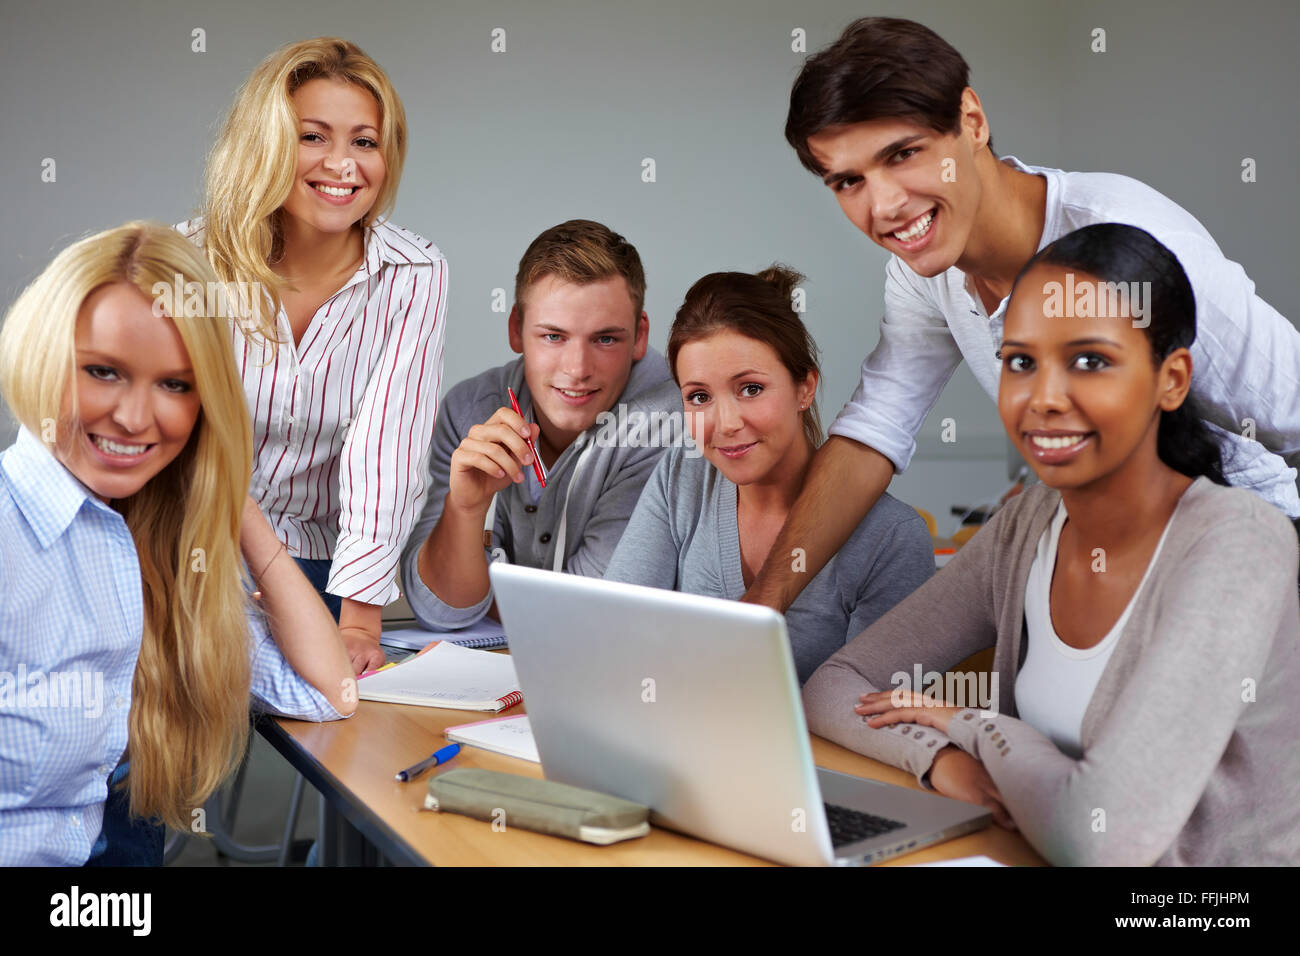 Porträt der Gruppe von Studenten um einen laptop Stockfoto